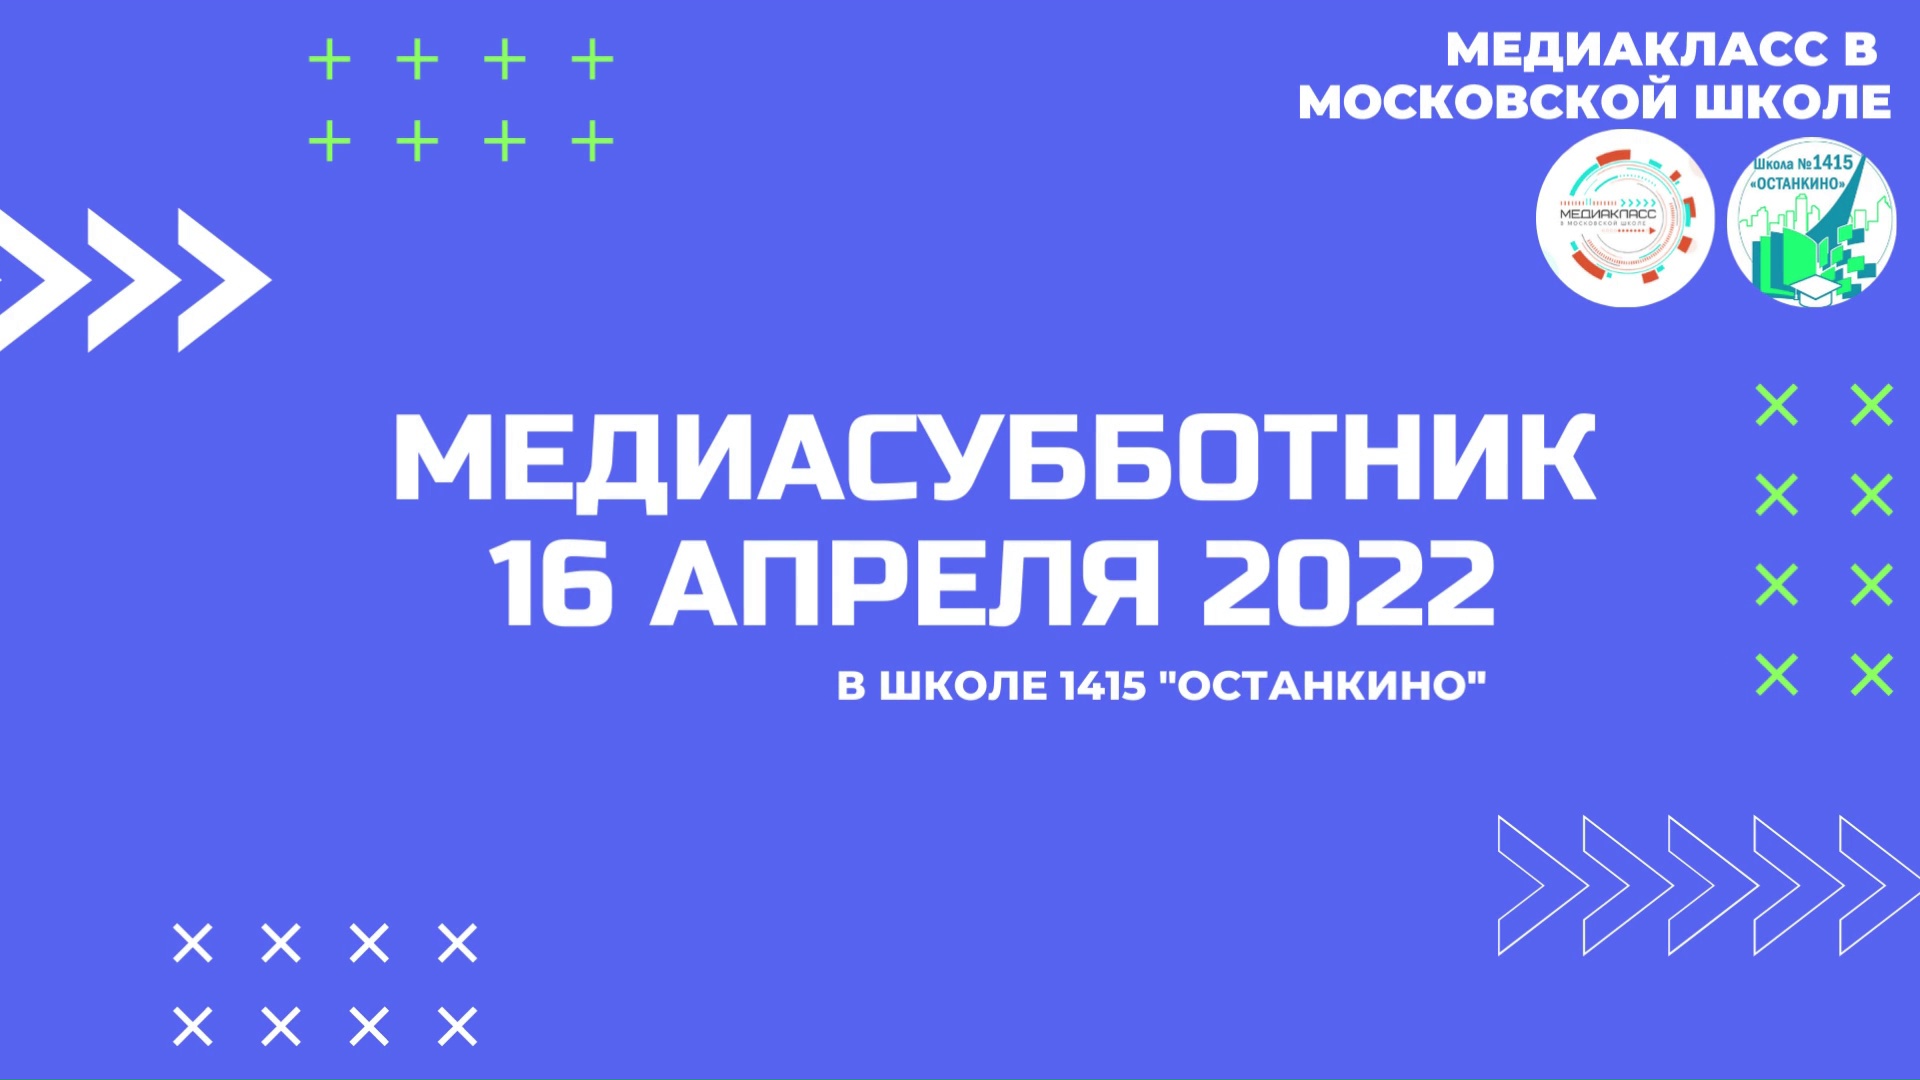 Медиасубботник-2022: первый шаг в мир медиа. Отчет школы 1415